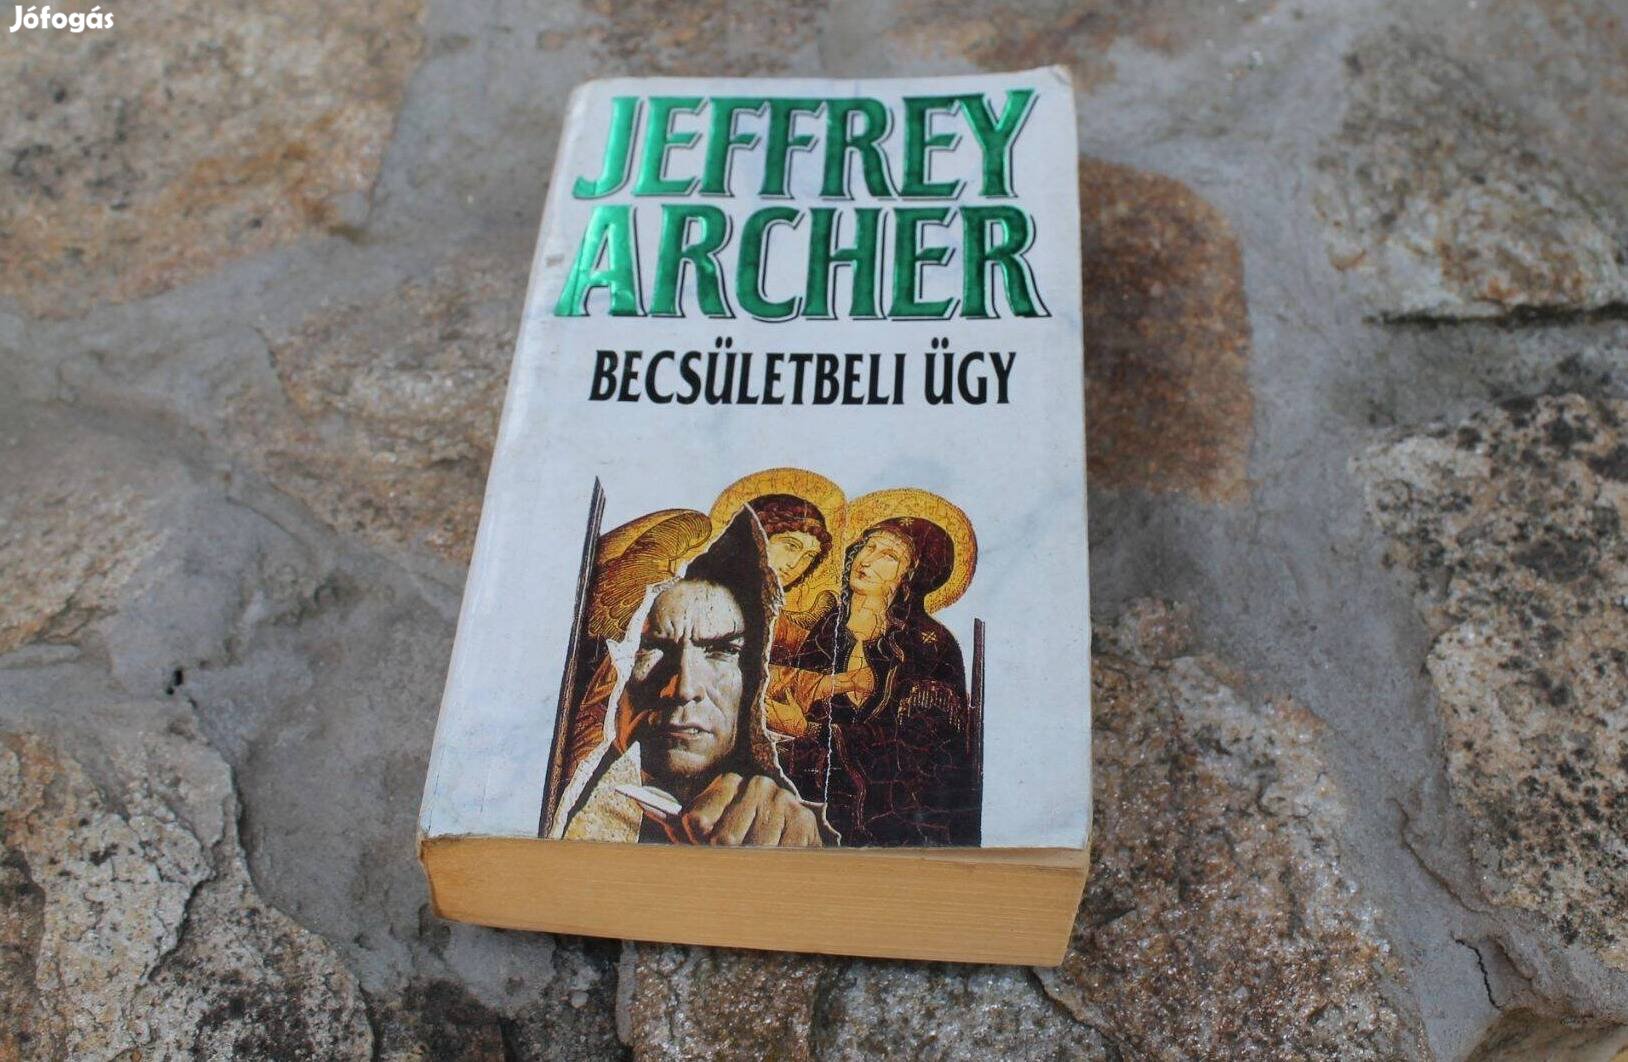 Eladó Jeffrey Archer könyv